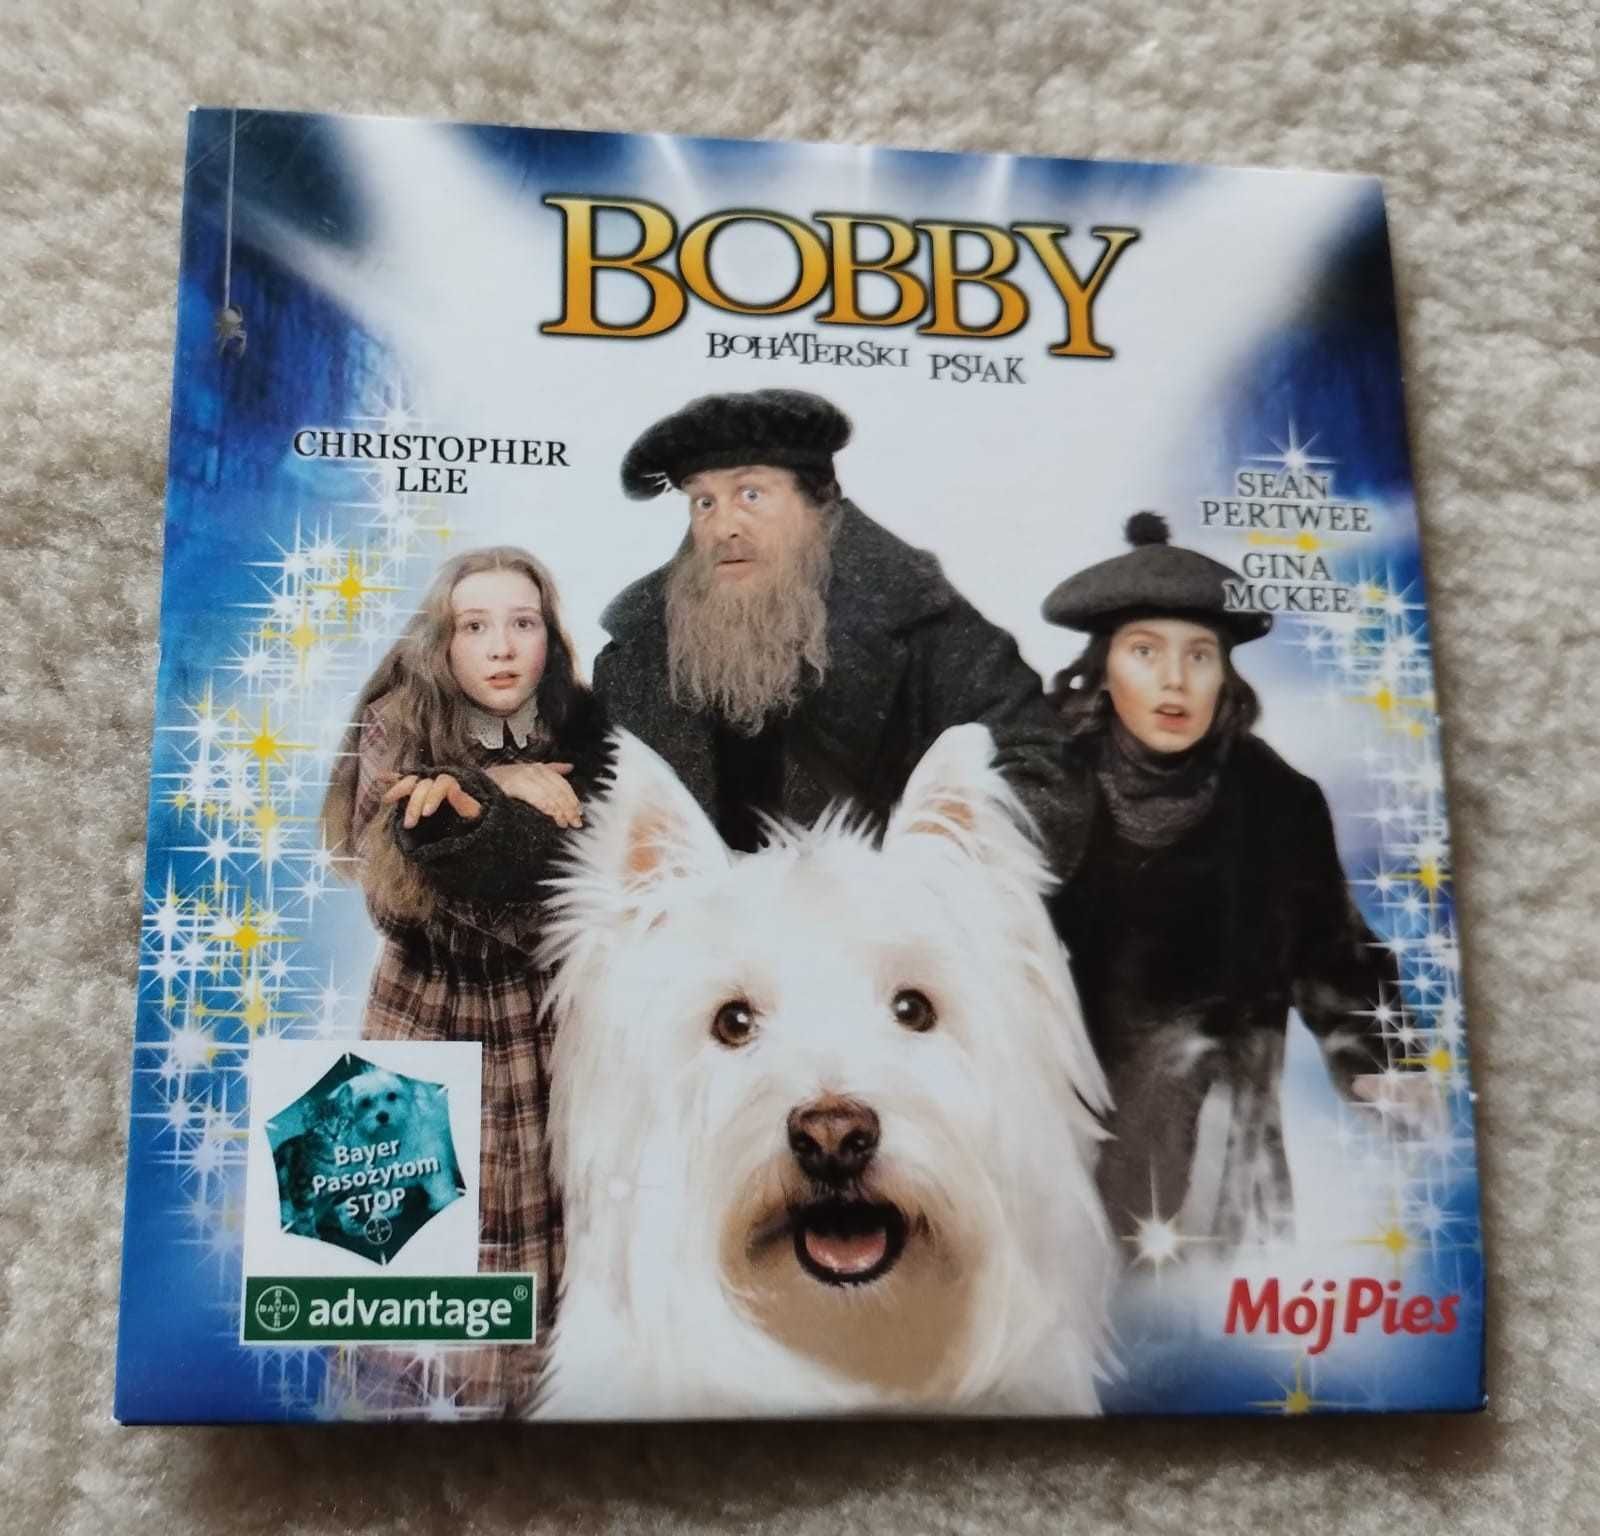 Bobby bohaterski psiak, bajka, film dla dzieci, płyta dvd, film